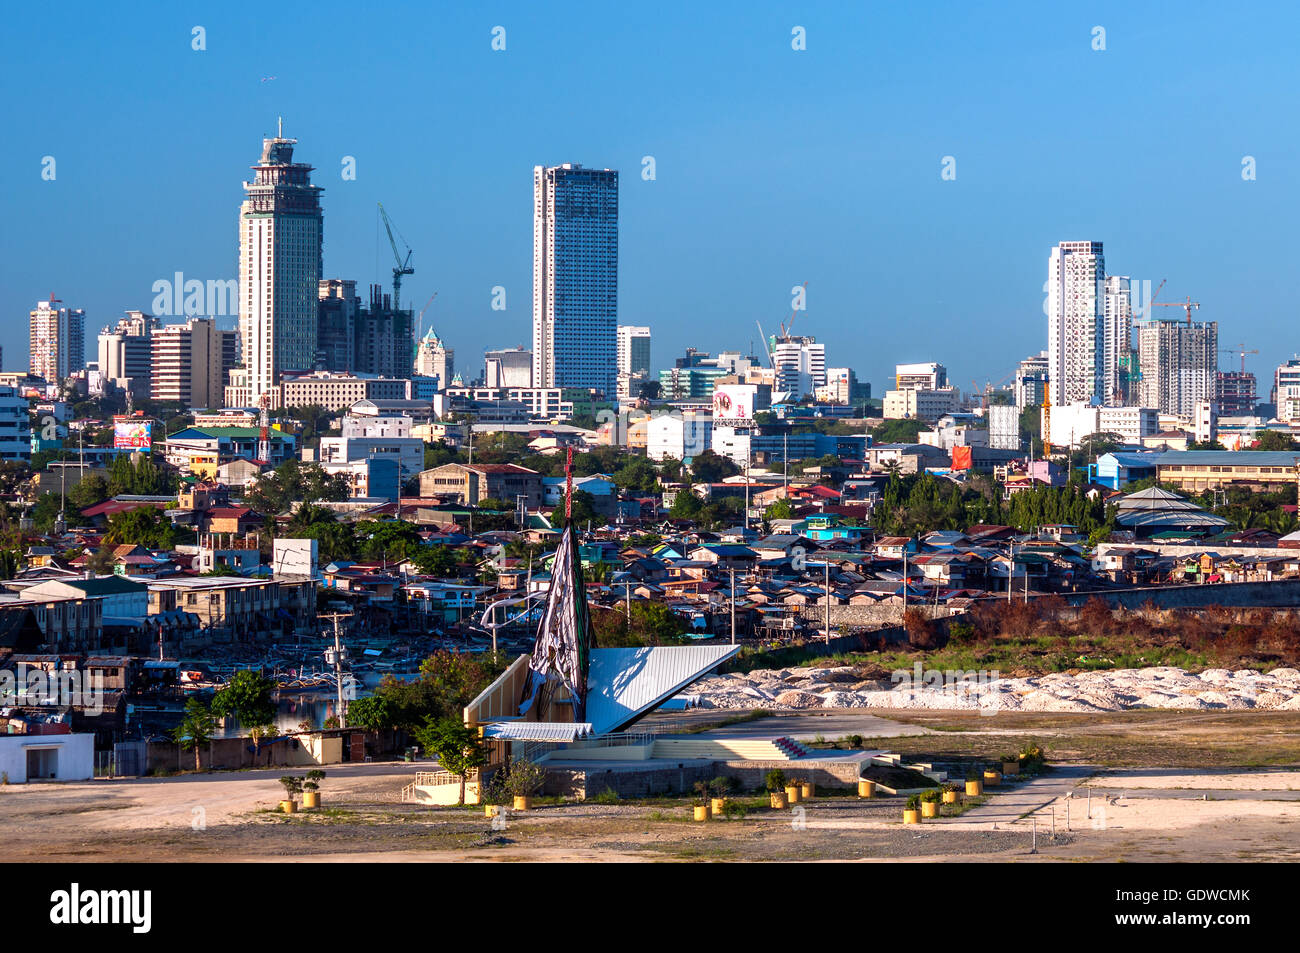 Luftaufnahme der Skyline der Stadt mit preiswerten Wohnungen im Vordergrund, gesehen von Südwesten, Süden Straße Precinct, Cebu City, Philippinen Stockfoto